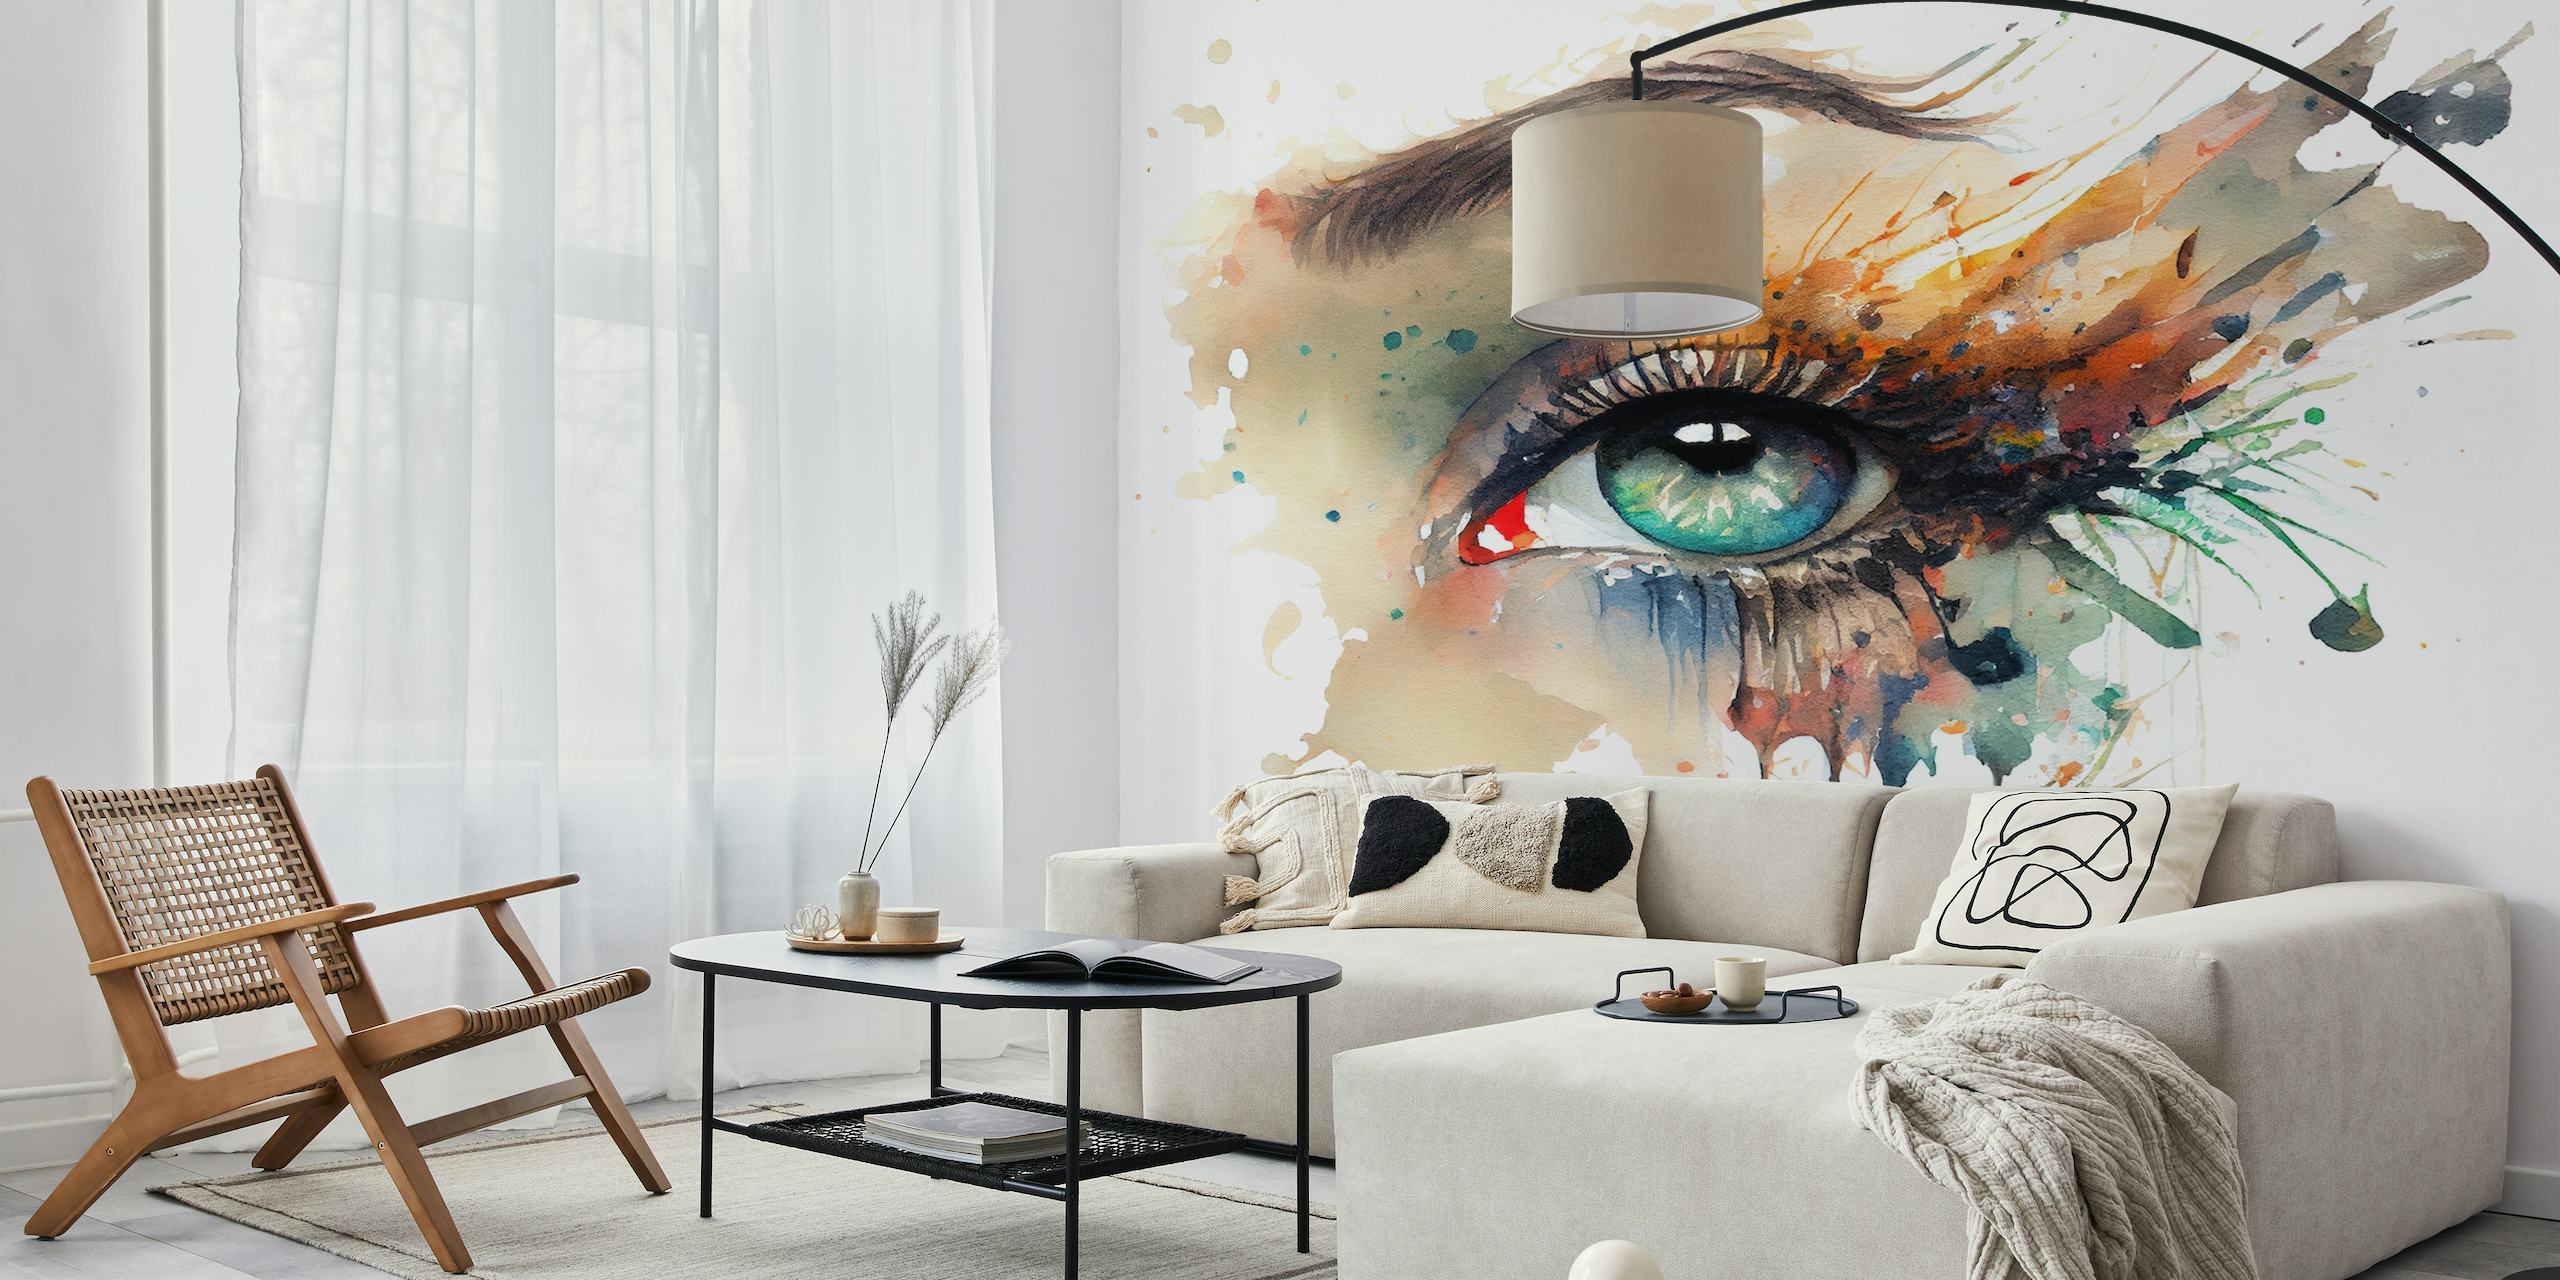 Mural artístico de un ojo de mujer pintado en acuarela con colores vivos y efecto de pintura que gotea